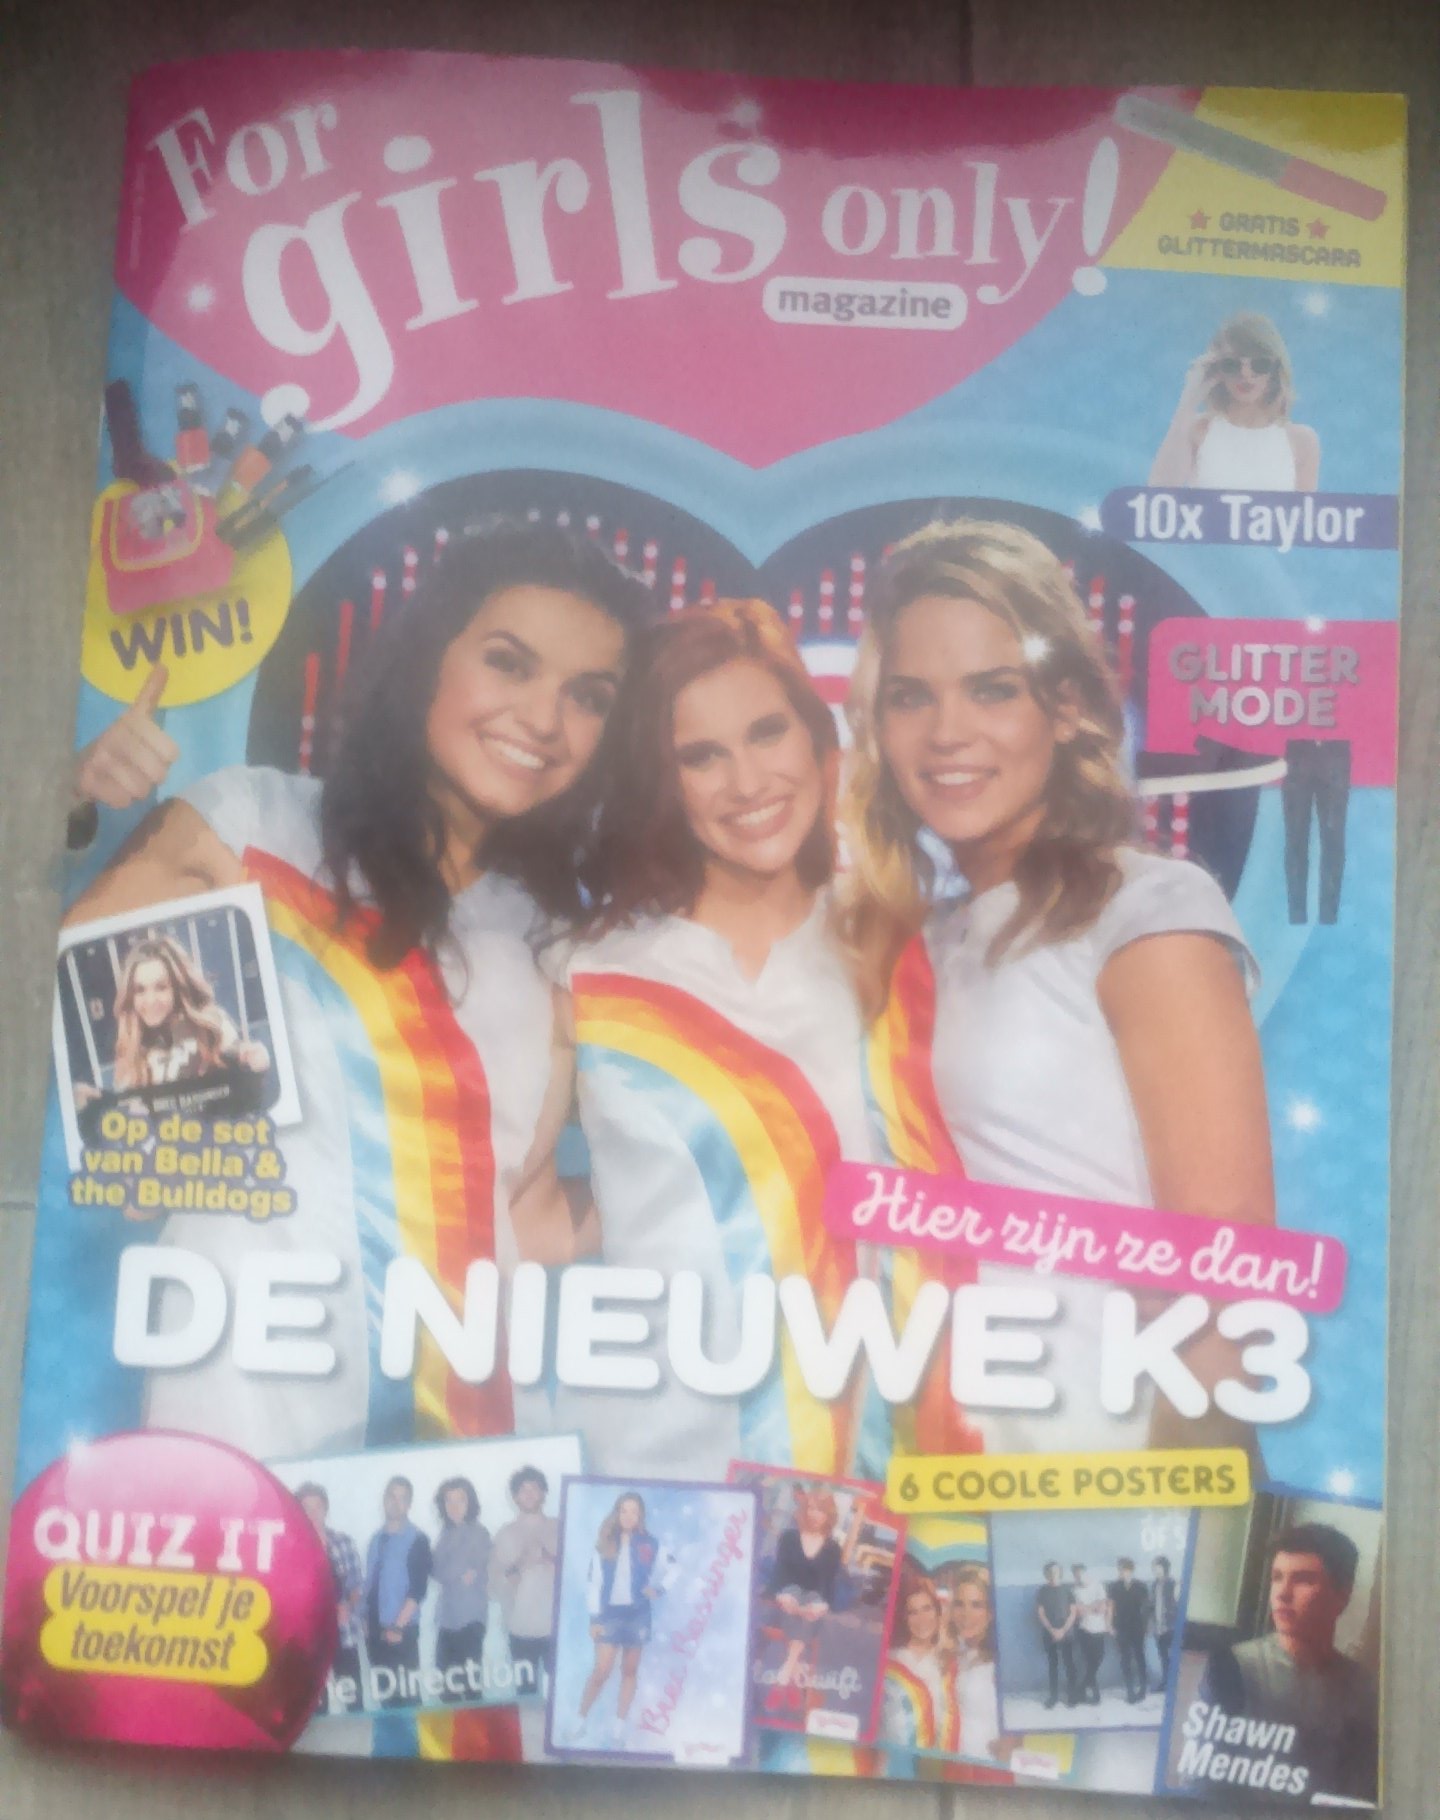 abces overhead cel k3 ♡ you on Twitter: "De nieuwe for girls only magazine met de superleuke  interview + poster van #K3 ligt al in de winkel❤😊 https://t.co/Qyyjp9PEmA"  / Twitter